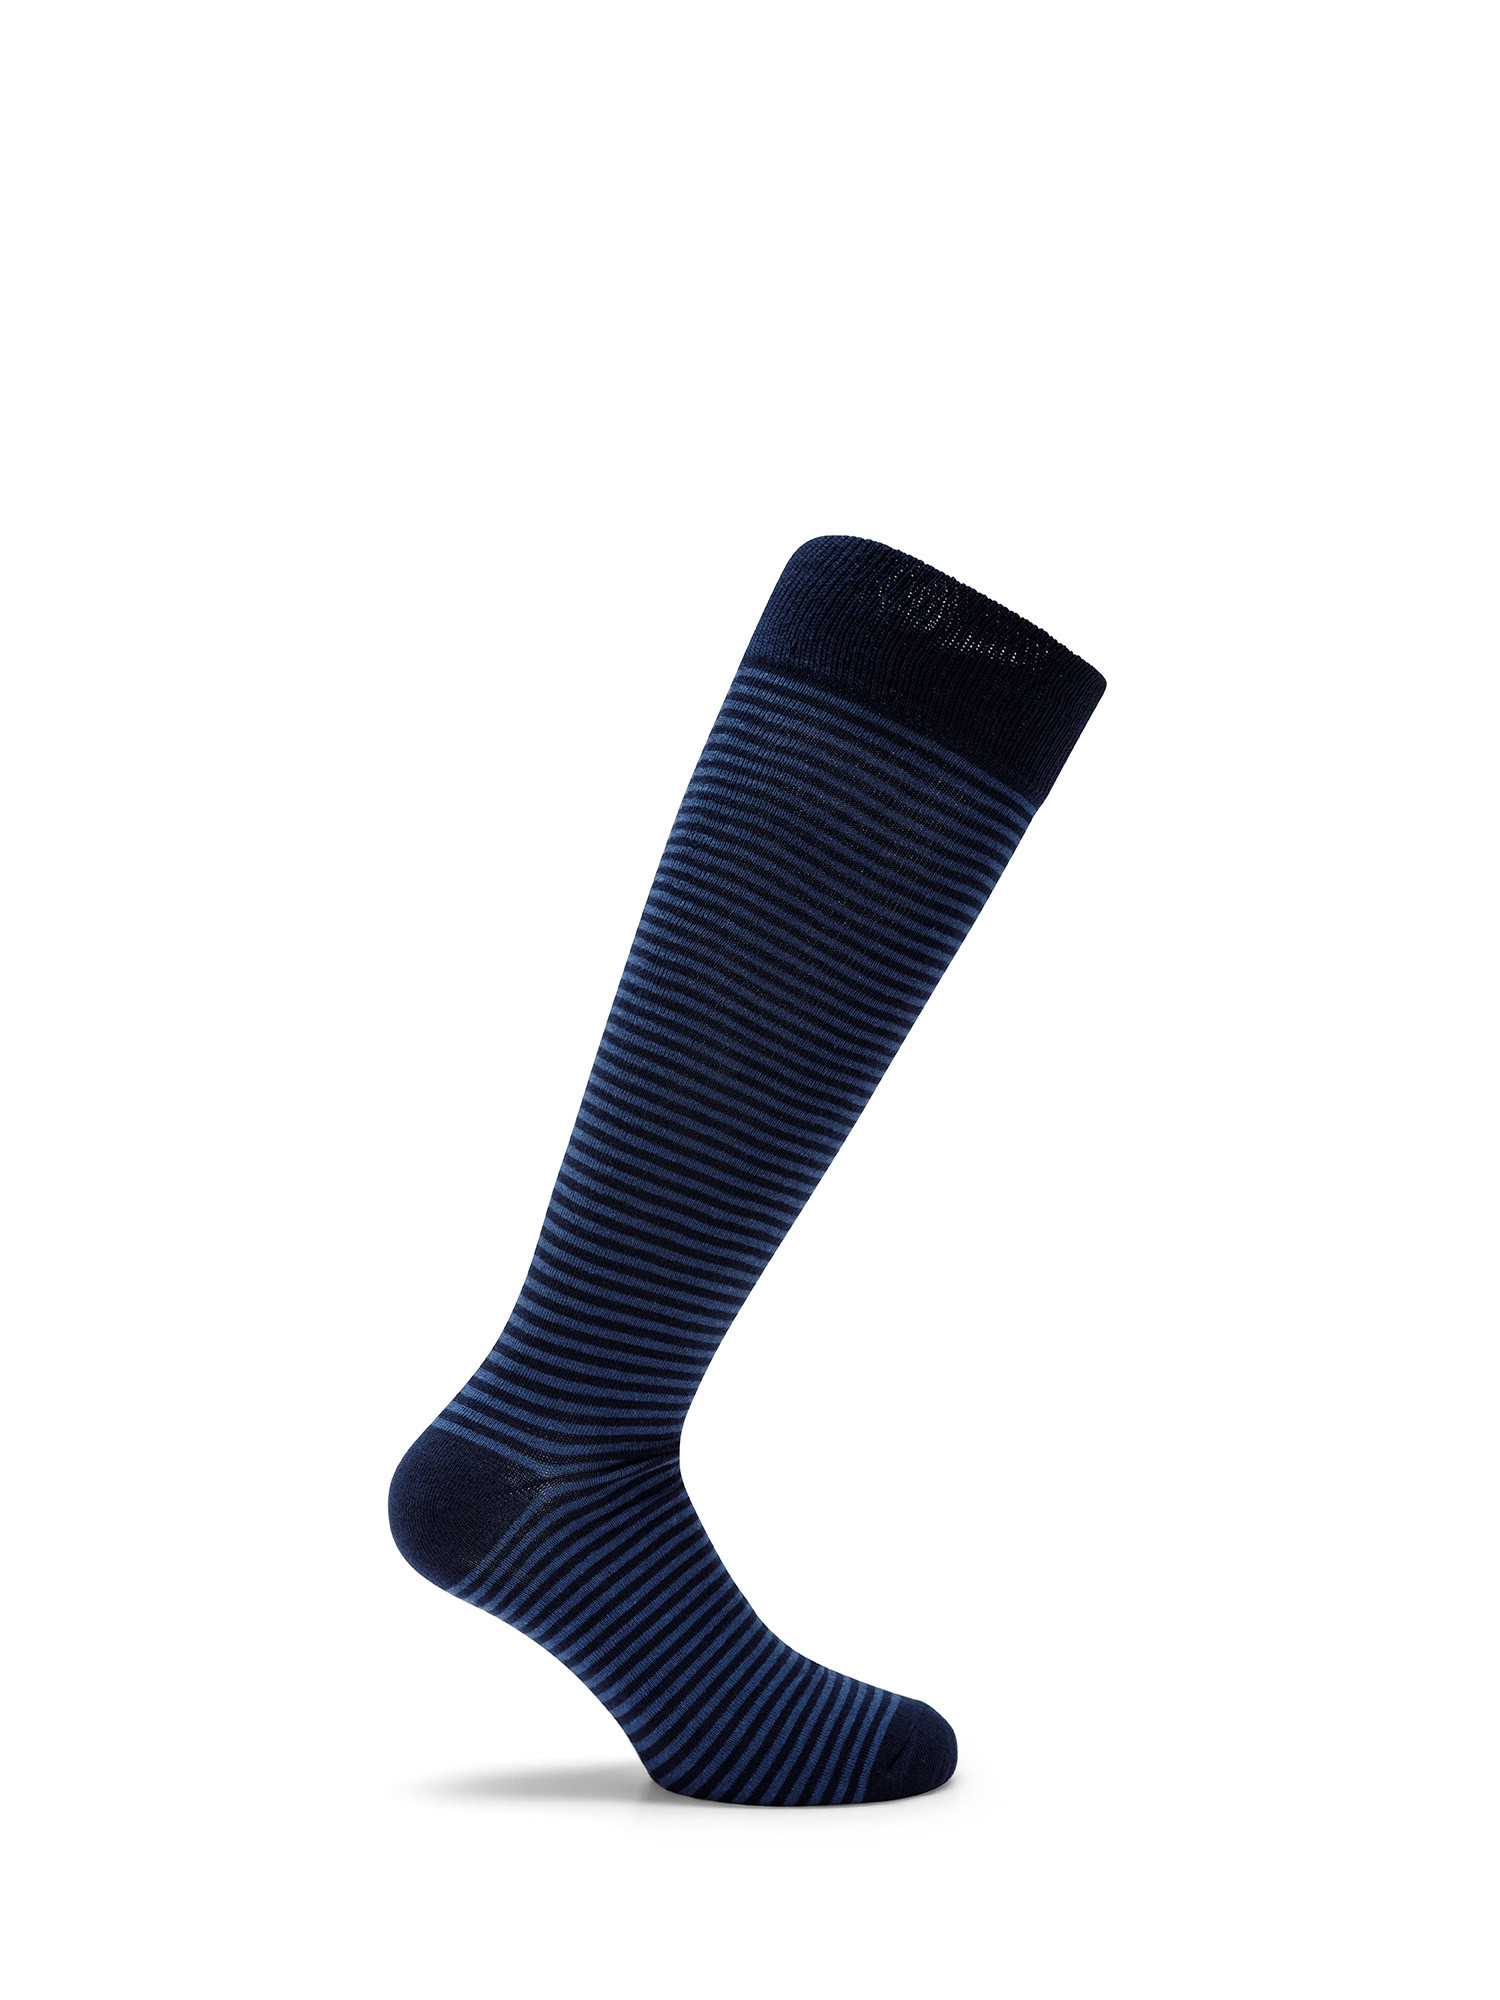 Luca D'Altieri - Set of 3 patterned long socks, Dark Blue, large image number 1